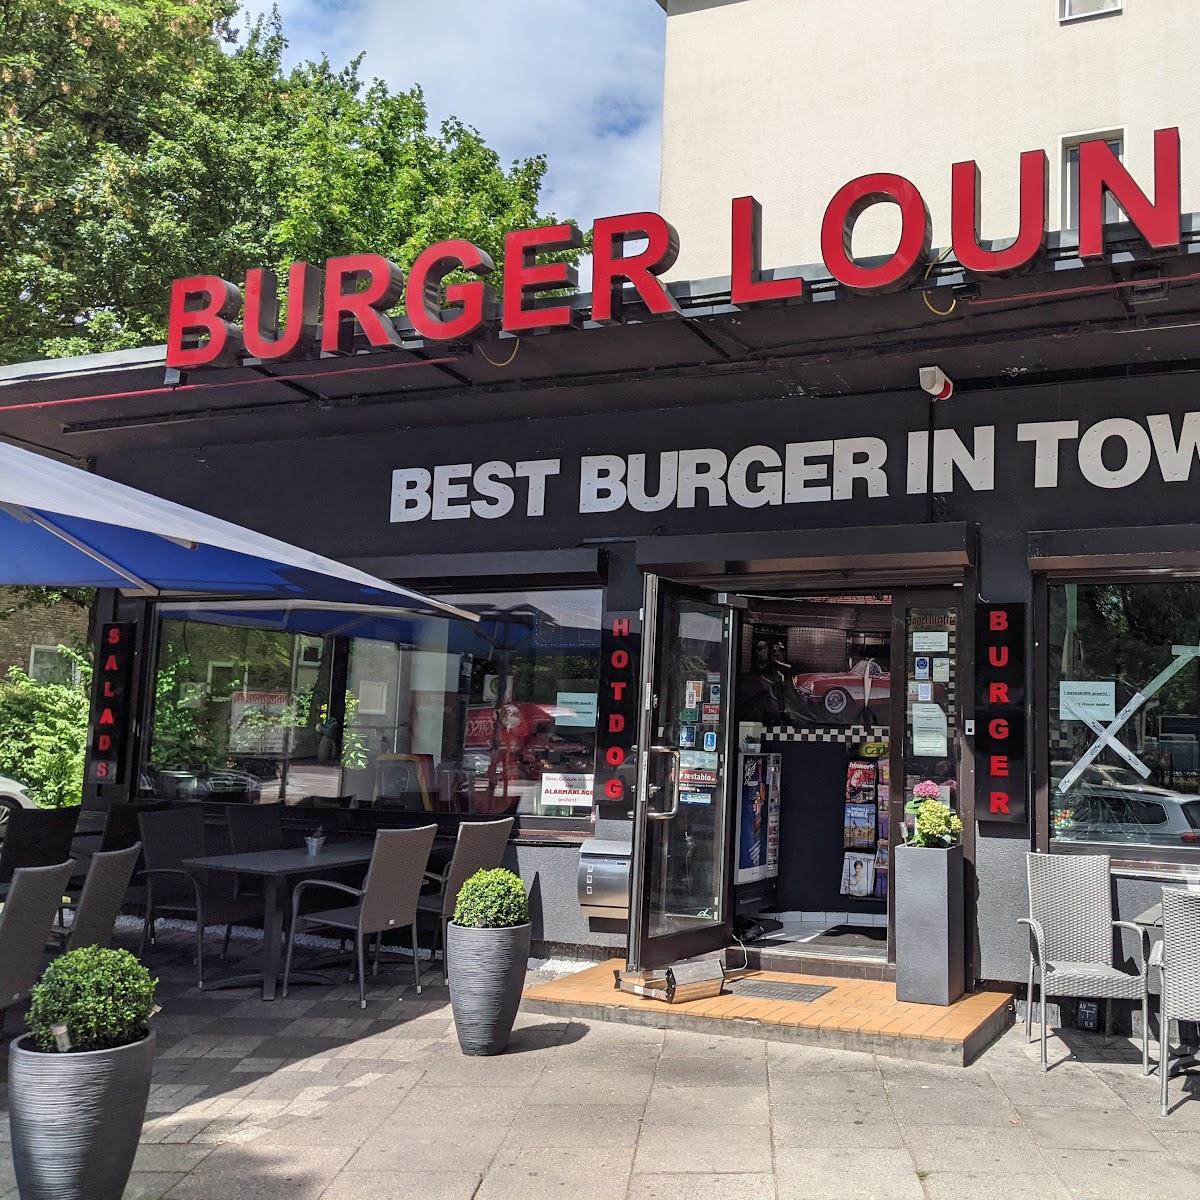 Restaurant "Burger Lounge Lieferservice" in Hamburg